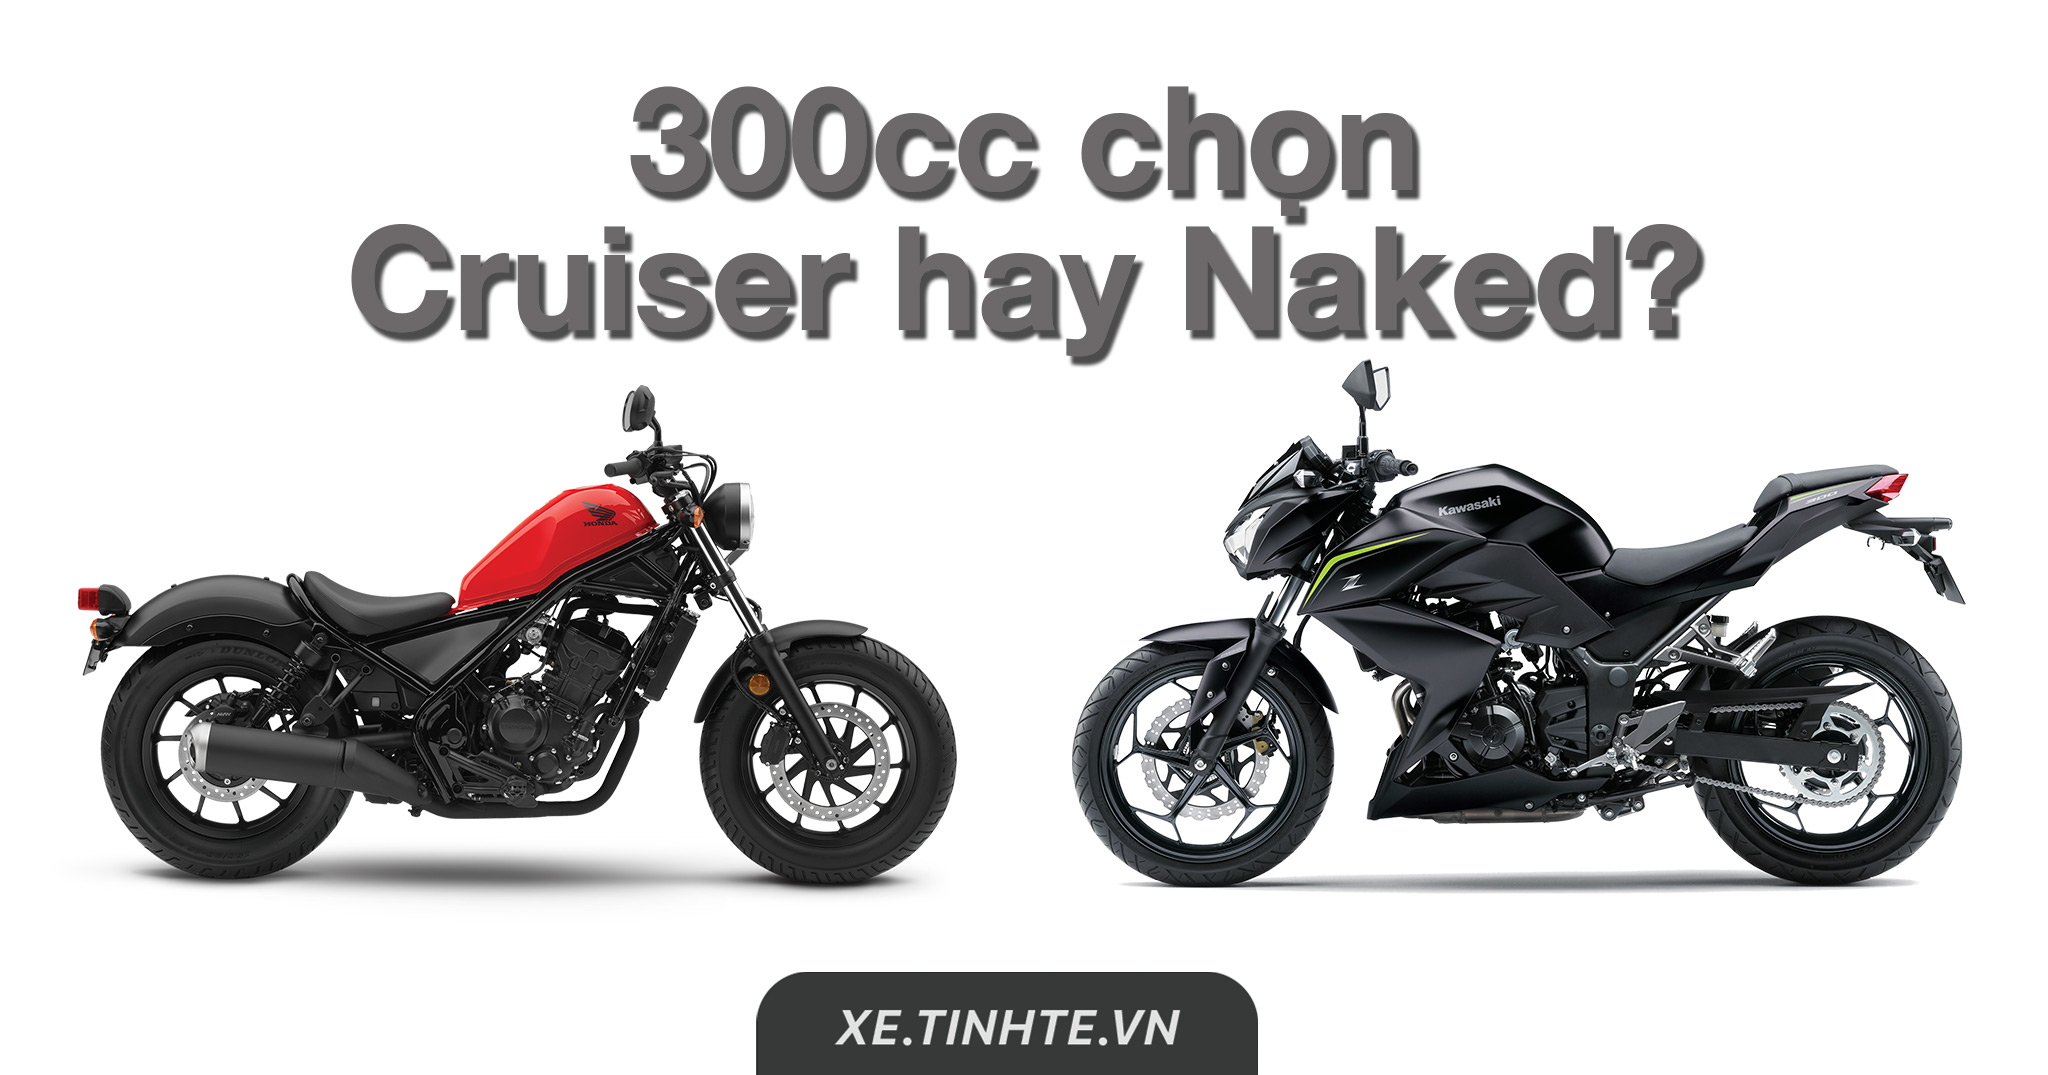 [Hỏi Tinh Tế] 300cc anh em chọn xe Cruiser hay Naked: Honda Rebel 300 ABS hay Kawasaki Z300 ABS?